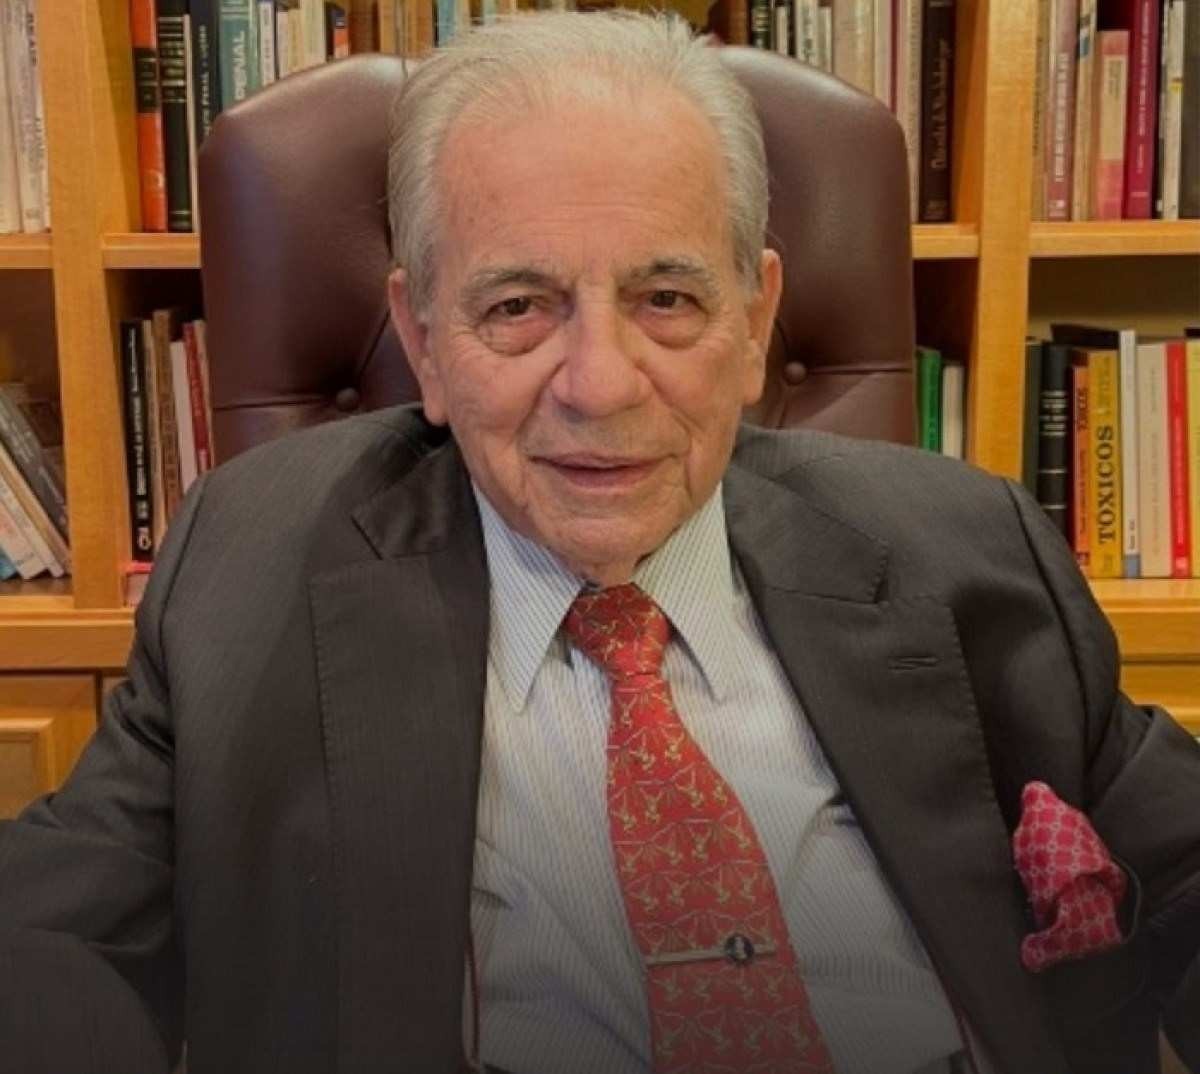 Morre Carlos Fernando Mathias, ex-ministro do STJ, aos 85 anos